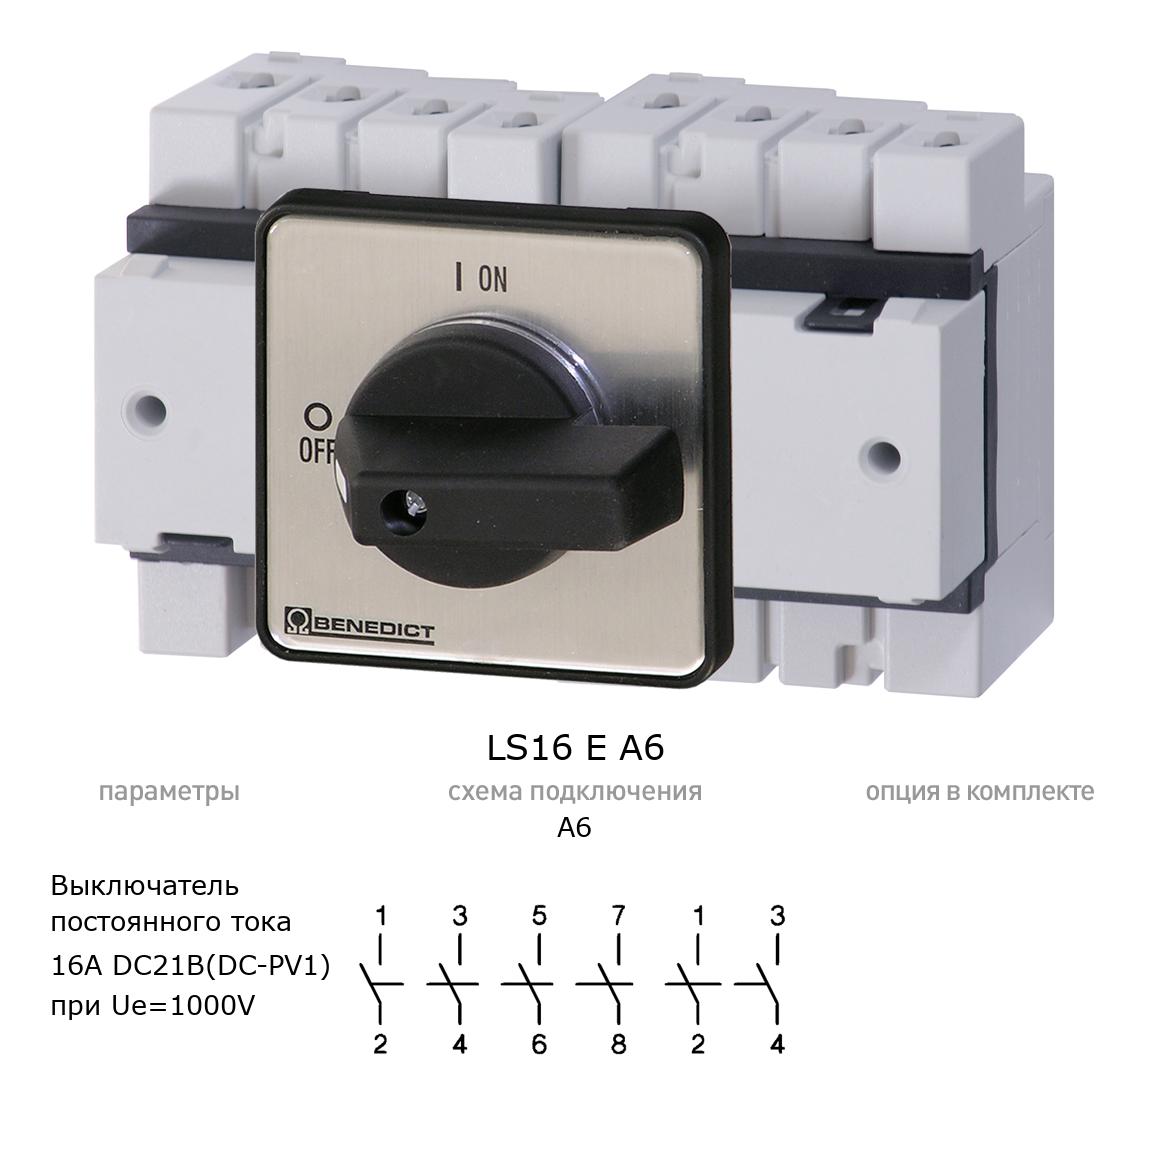 Кулачковый переключатель для постоянного тока (DC) LS16 E A6 BENEDICT